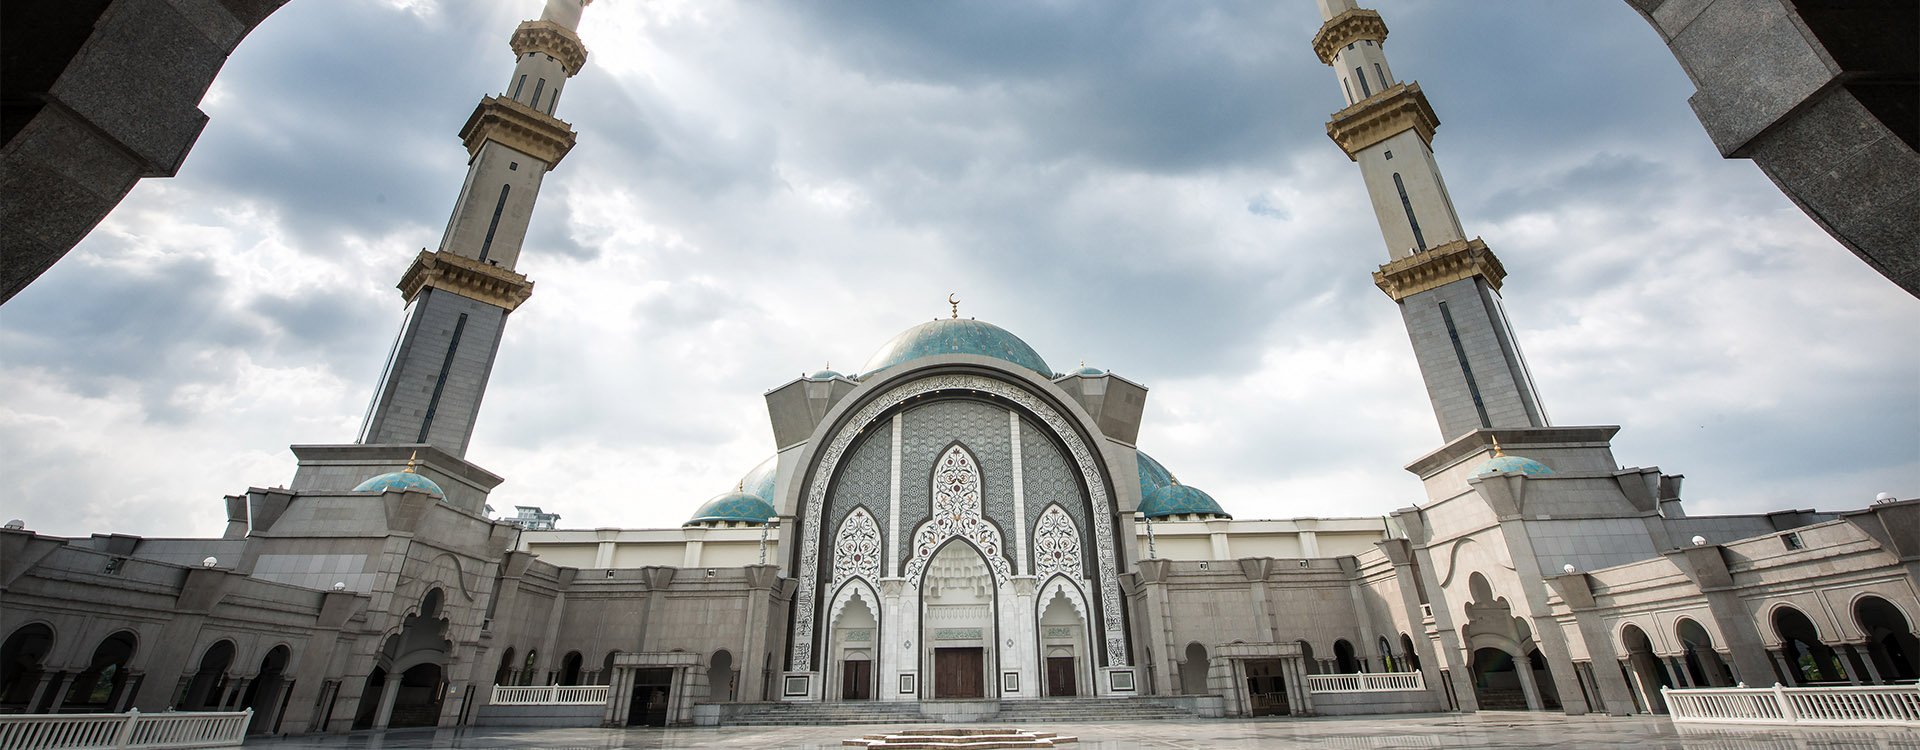 Entrance of mosque Masjid Wilayah Persekutuan in Kuala Lumpur, Malaysia